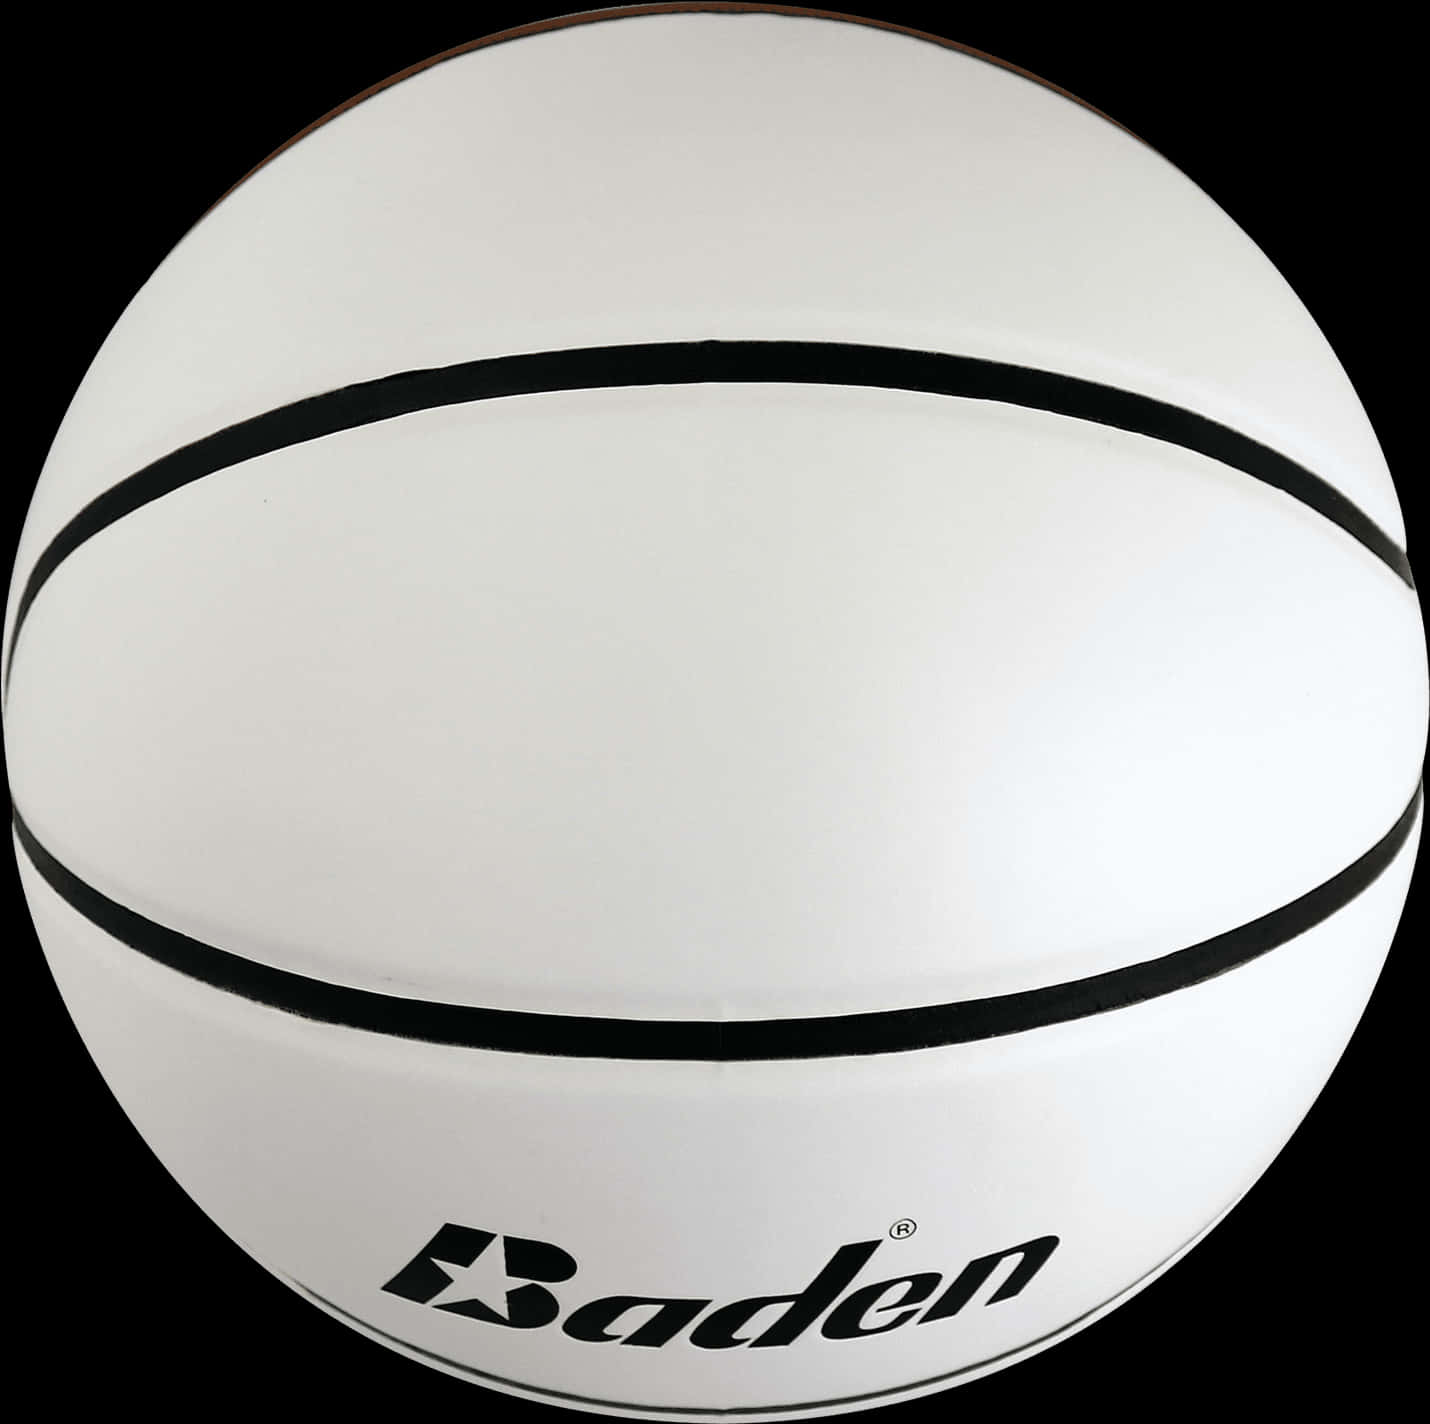 Baden Basketball Isolatedon Black PNG